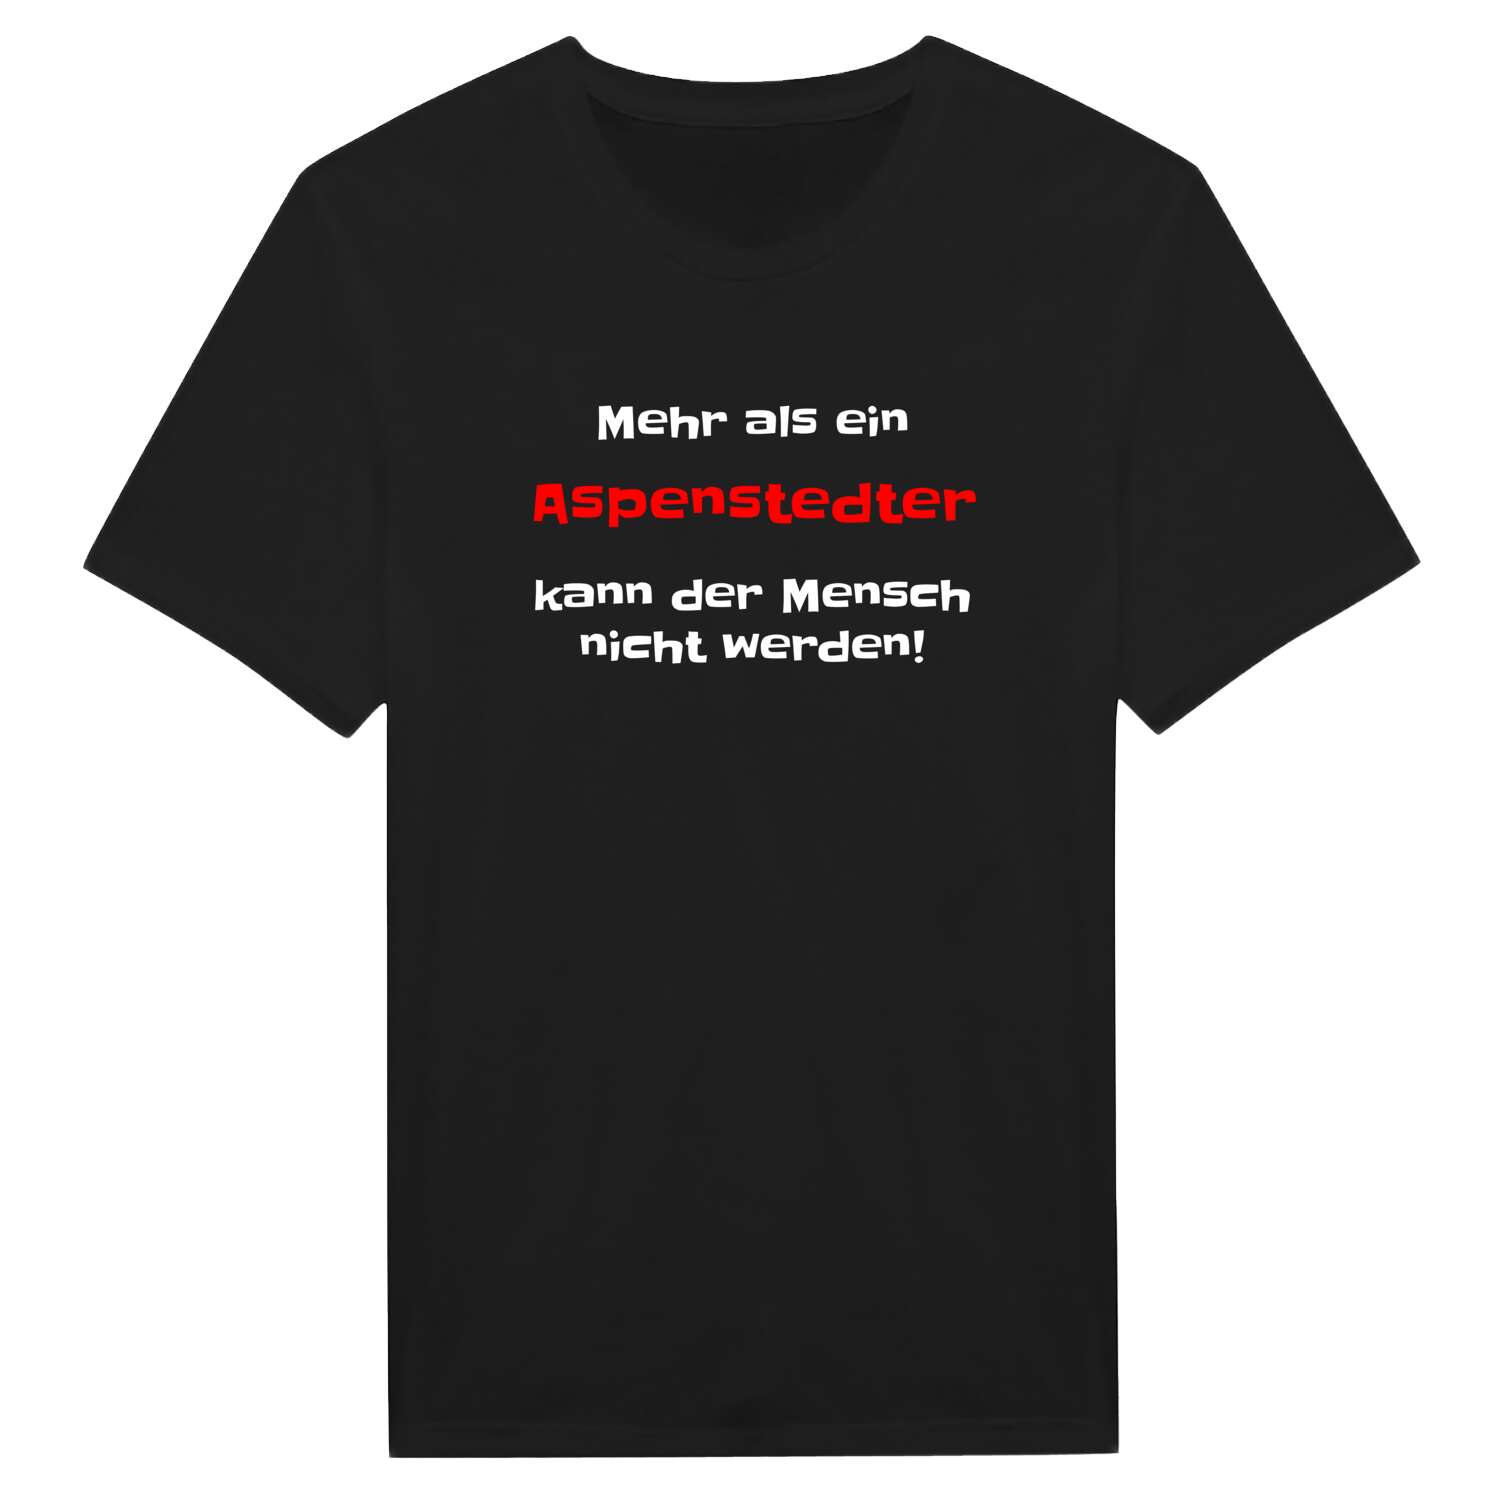 Aspenstedt T-Shirt »Mehr als ein«